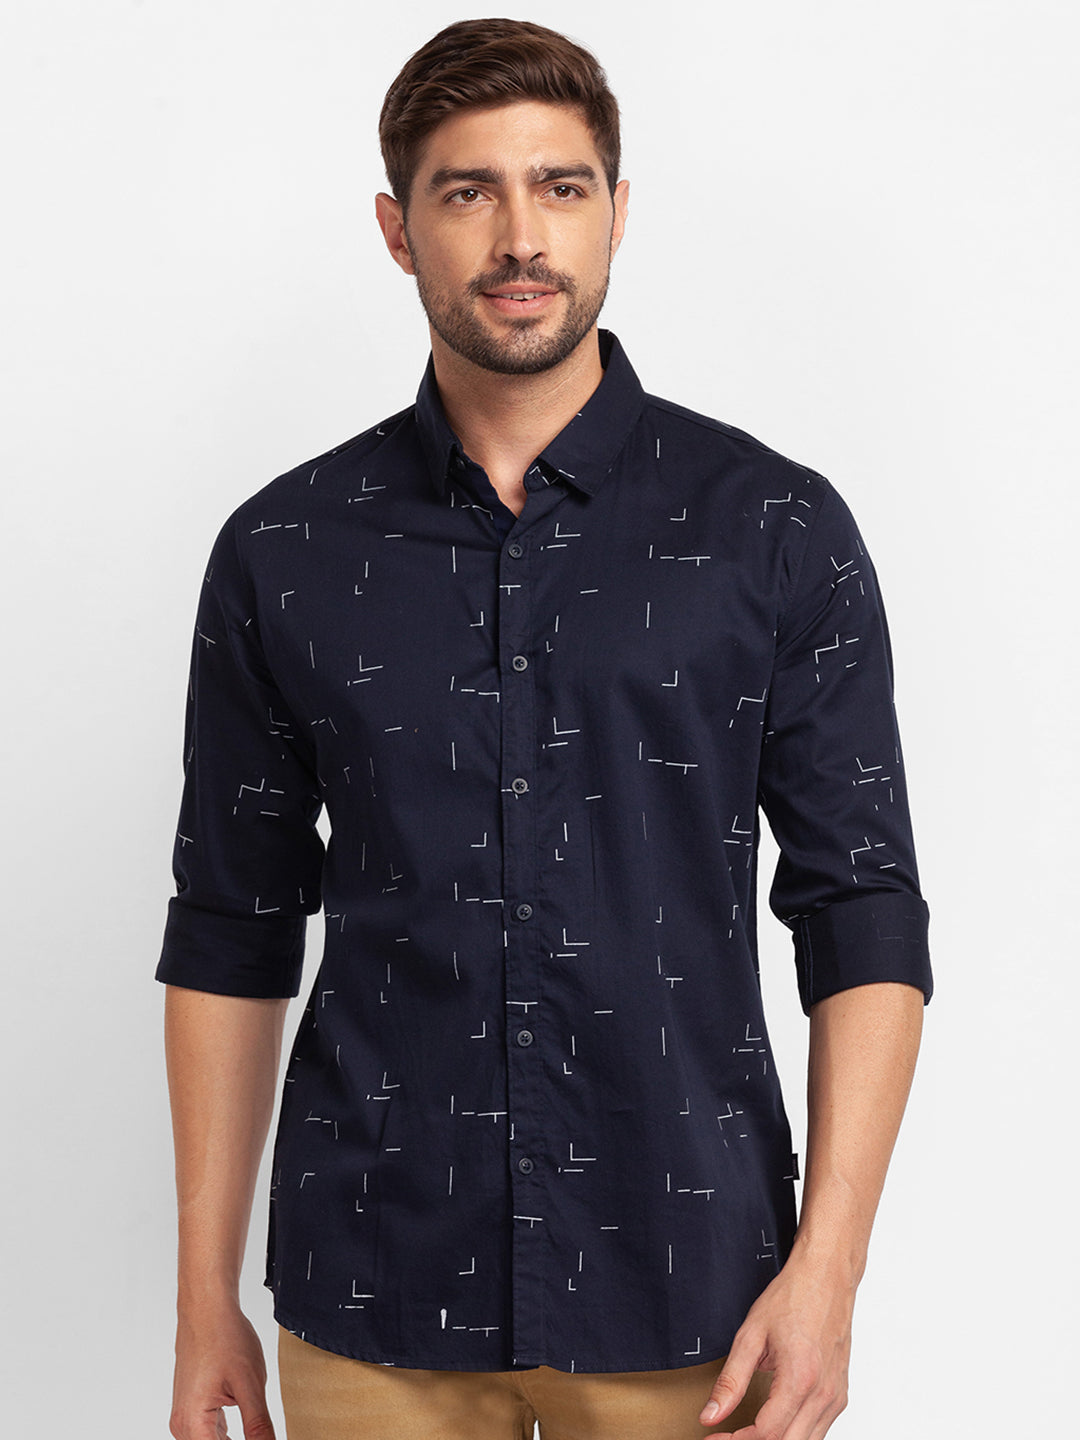 Spykar Navy Blue Satin Full Sleeve Printed Shirt For Men